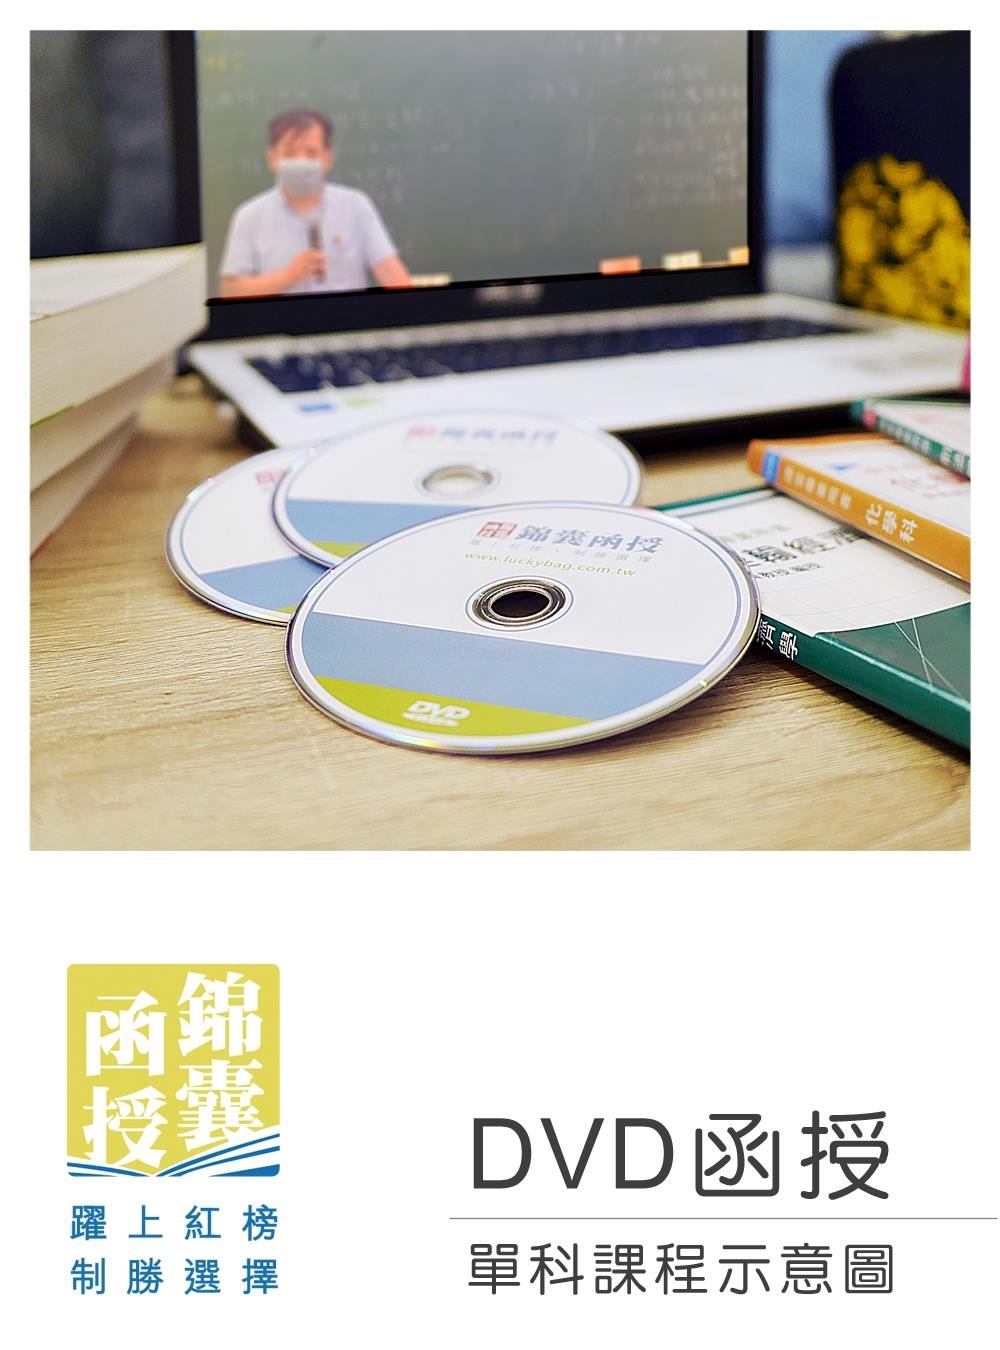 【DVD函授】資訊管理與資通(資訊)安全實務-單科課程(111版)